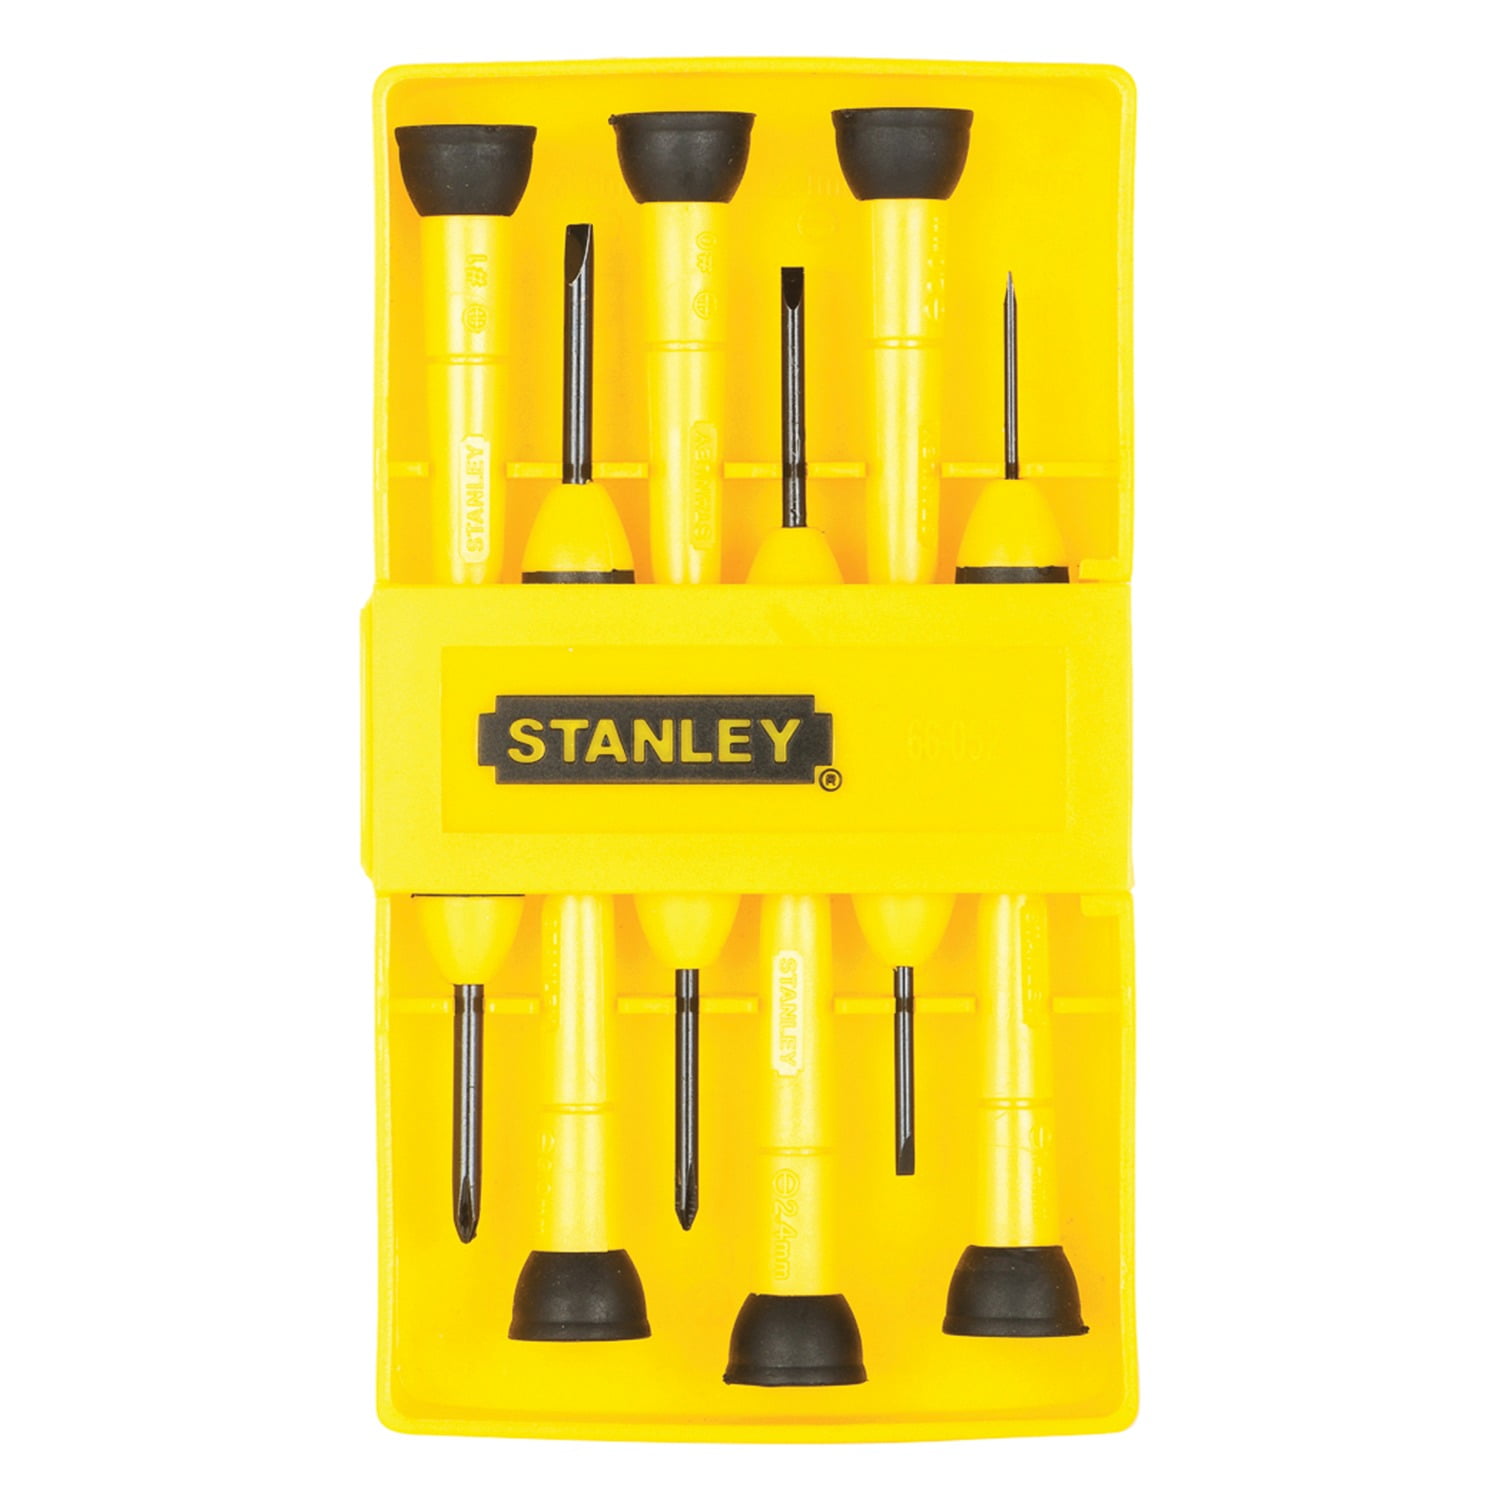 Black & Decker Stanley 6-Piece Screwdrivers Set (6 ct) Delivery - DoorDash